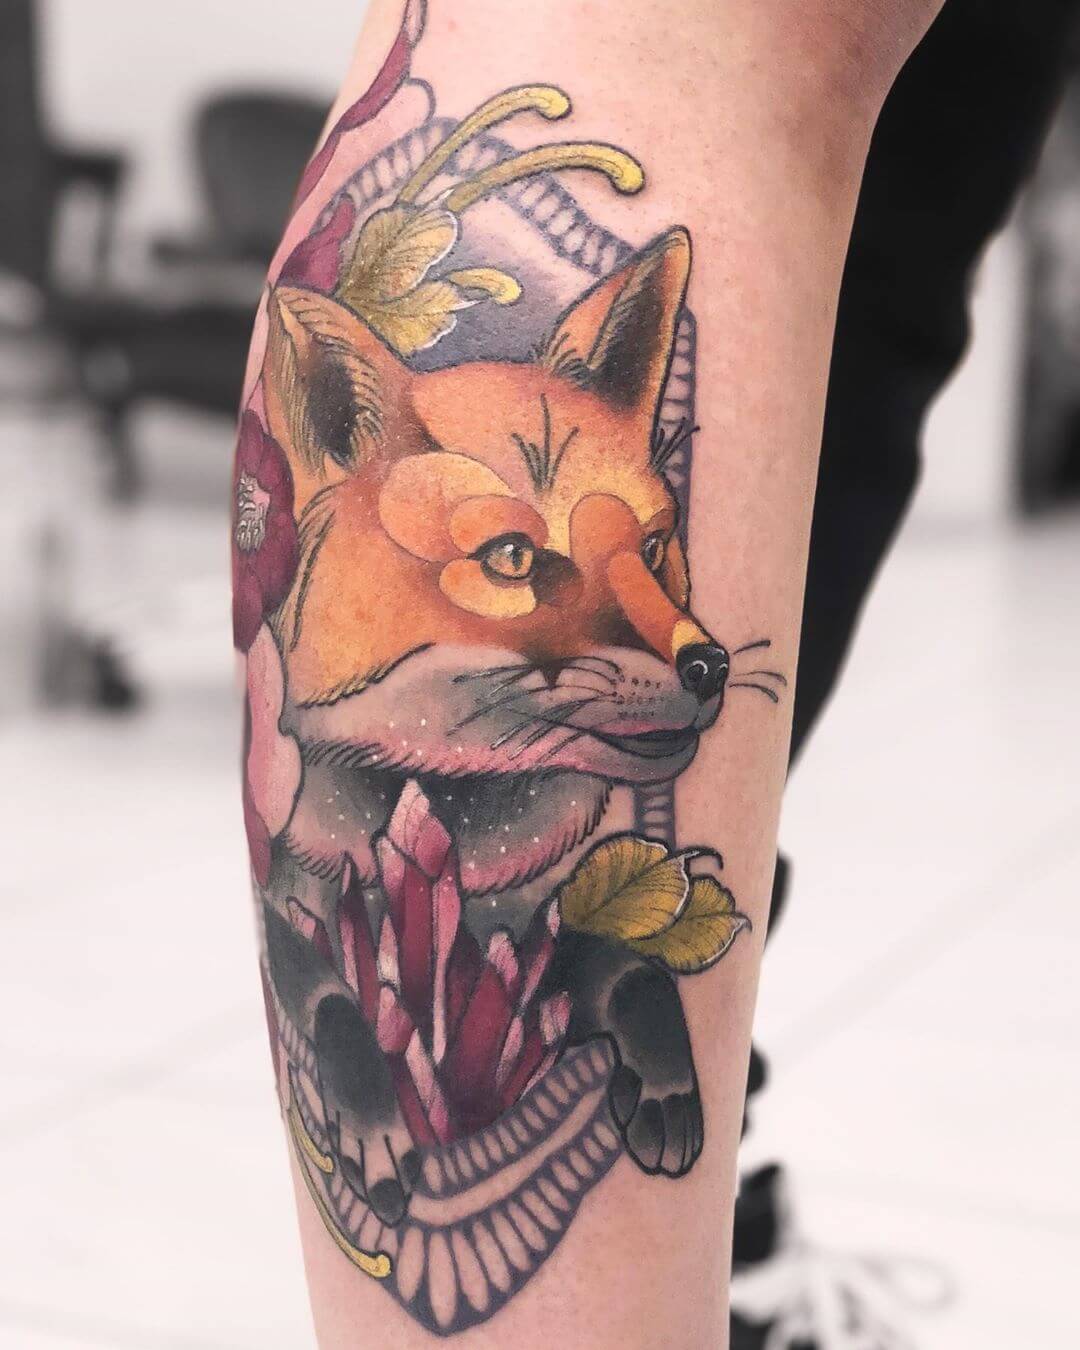 Stilvoll anders: Fuchs-Tattoos